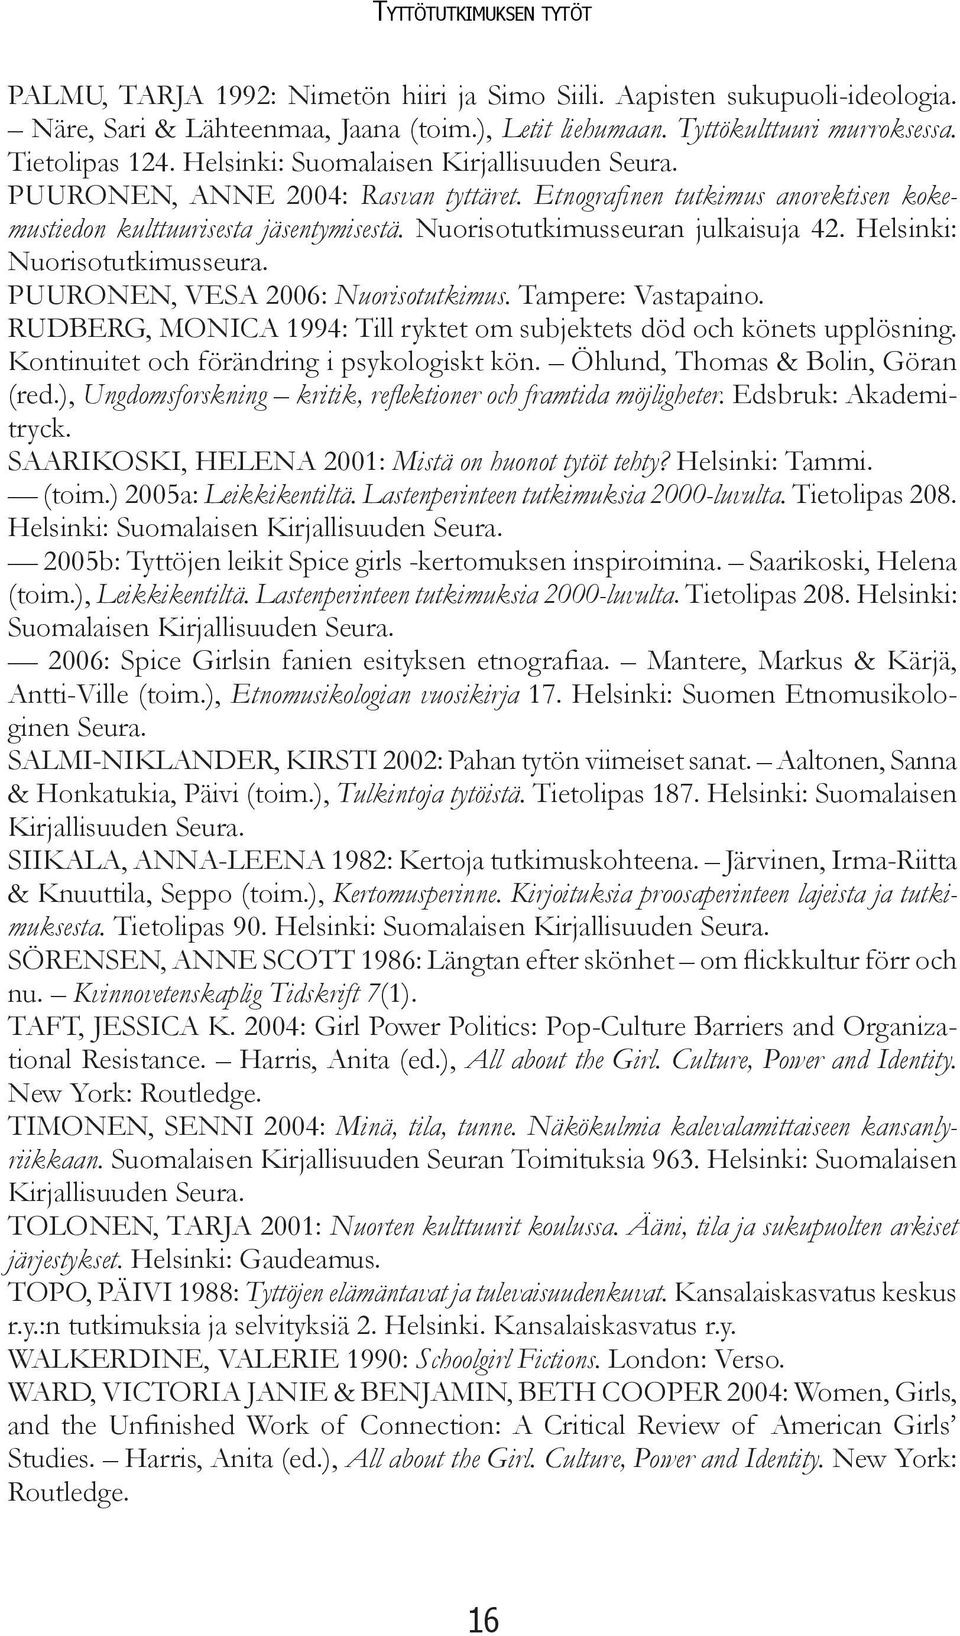 Nuorisotutkimusseuran julkaisuja 42. Helsinki: Nuorisotutkimusseura. PUURONEN, VESA 2006: Nuorisotutkimus. Tampere: Vastapaino.